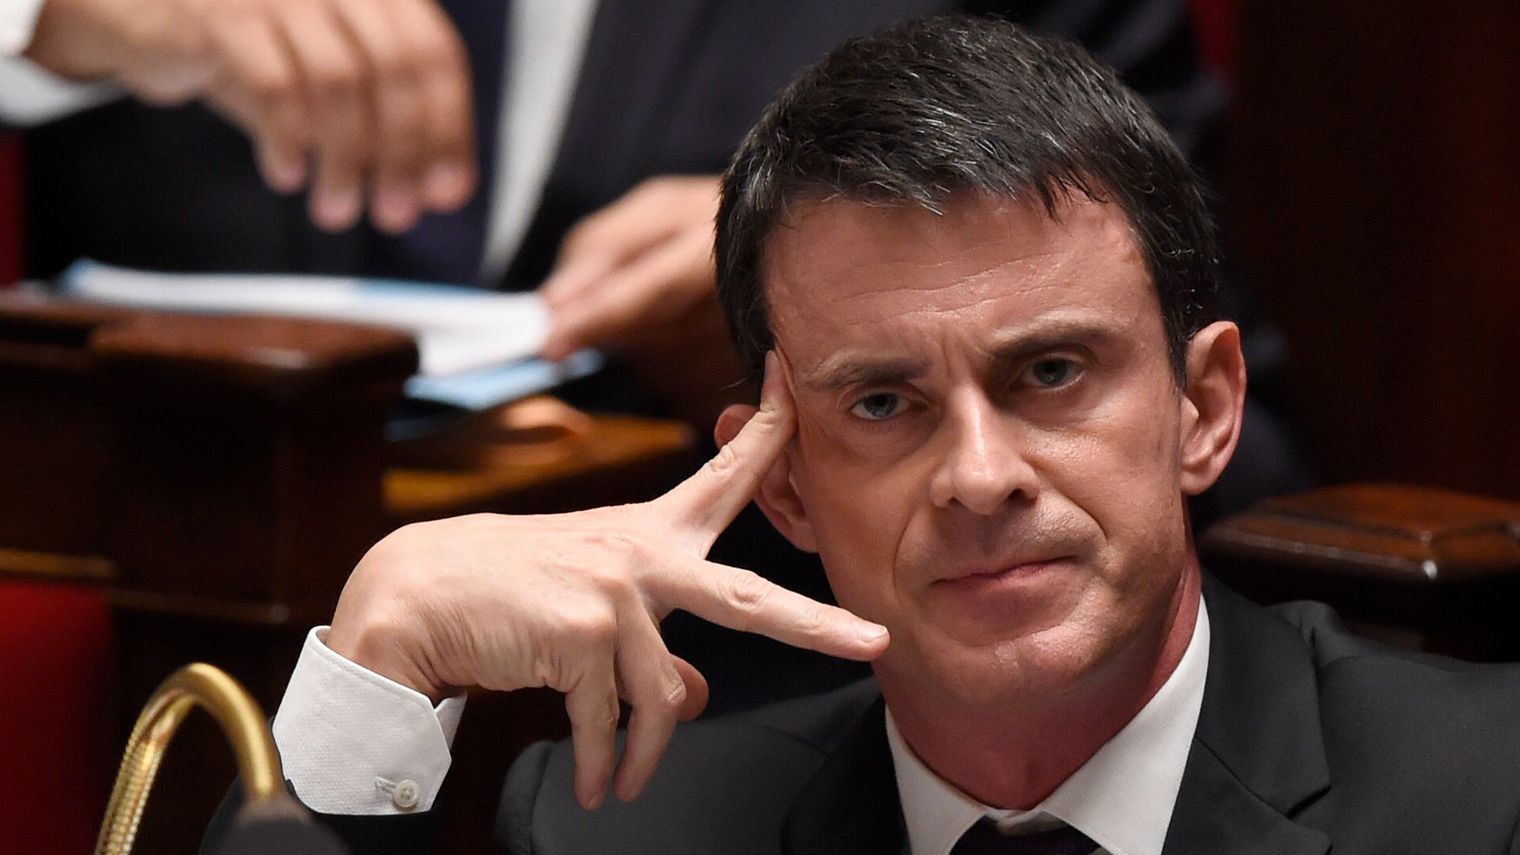 Evry : un montage de Manuel Valls en Hitler fait polémique, un employé municipal suspendu